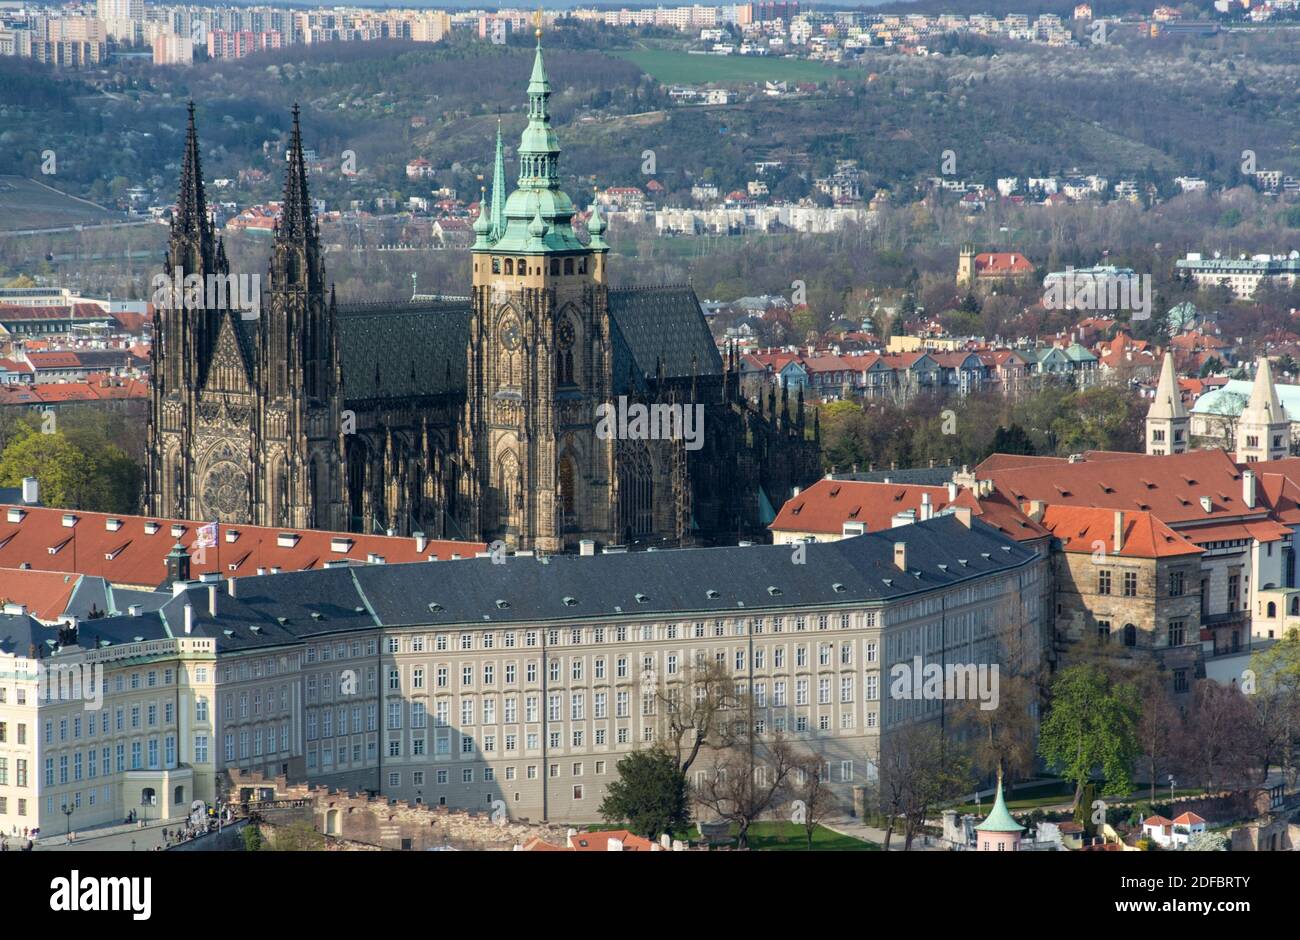 Prag ist die Hauptstadt der Tschechischen Republik und liegt an der Moldau. Die 'Stadt der hundert Tuerme' ist bekannt für den Altstaedter Ring mit bu Stock Photo